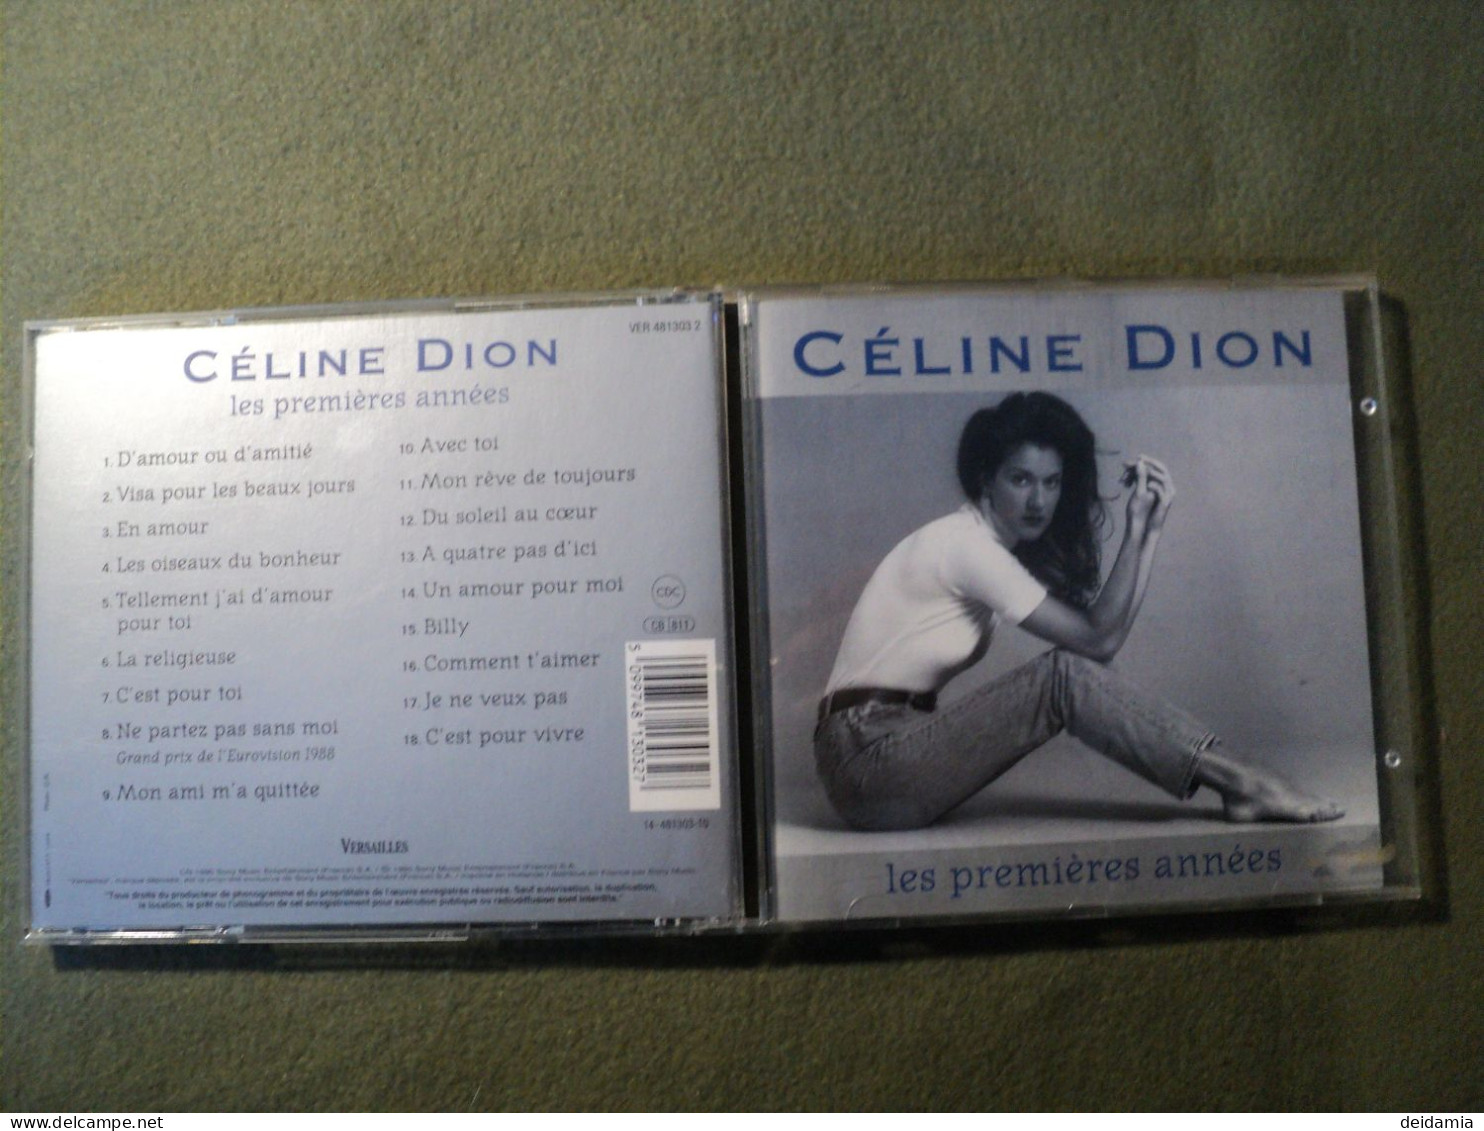 CELINE DION. CD 18 TITRES DE 1995. VERSAILLES 481 303 2 D AMOUR OU D AMITIE / VISA POUR LES BEAUX JOURS / EN AMOUR / LES - Autres - Musique Française